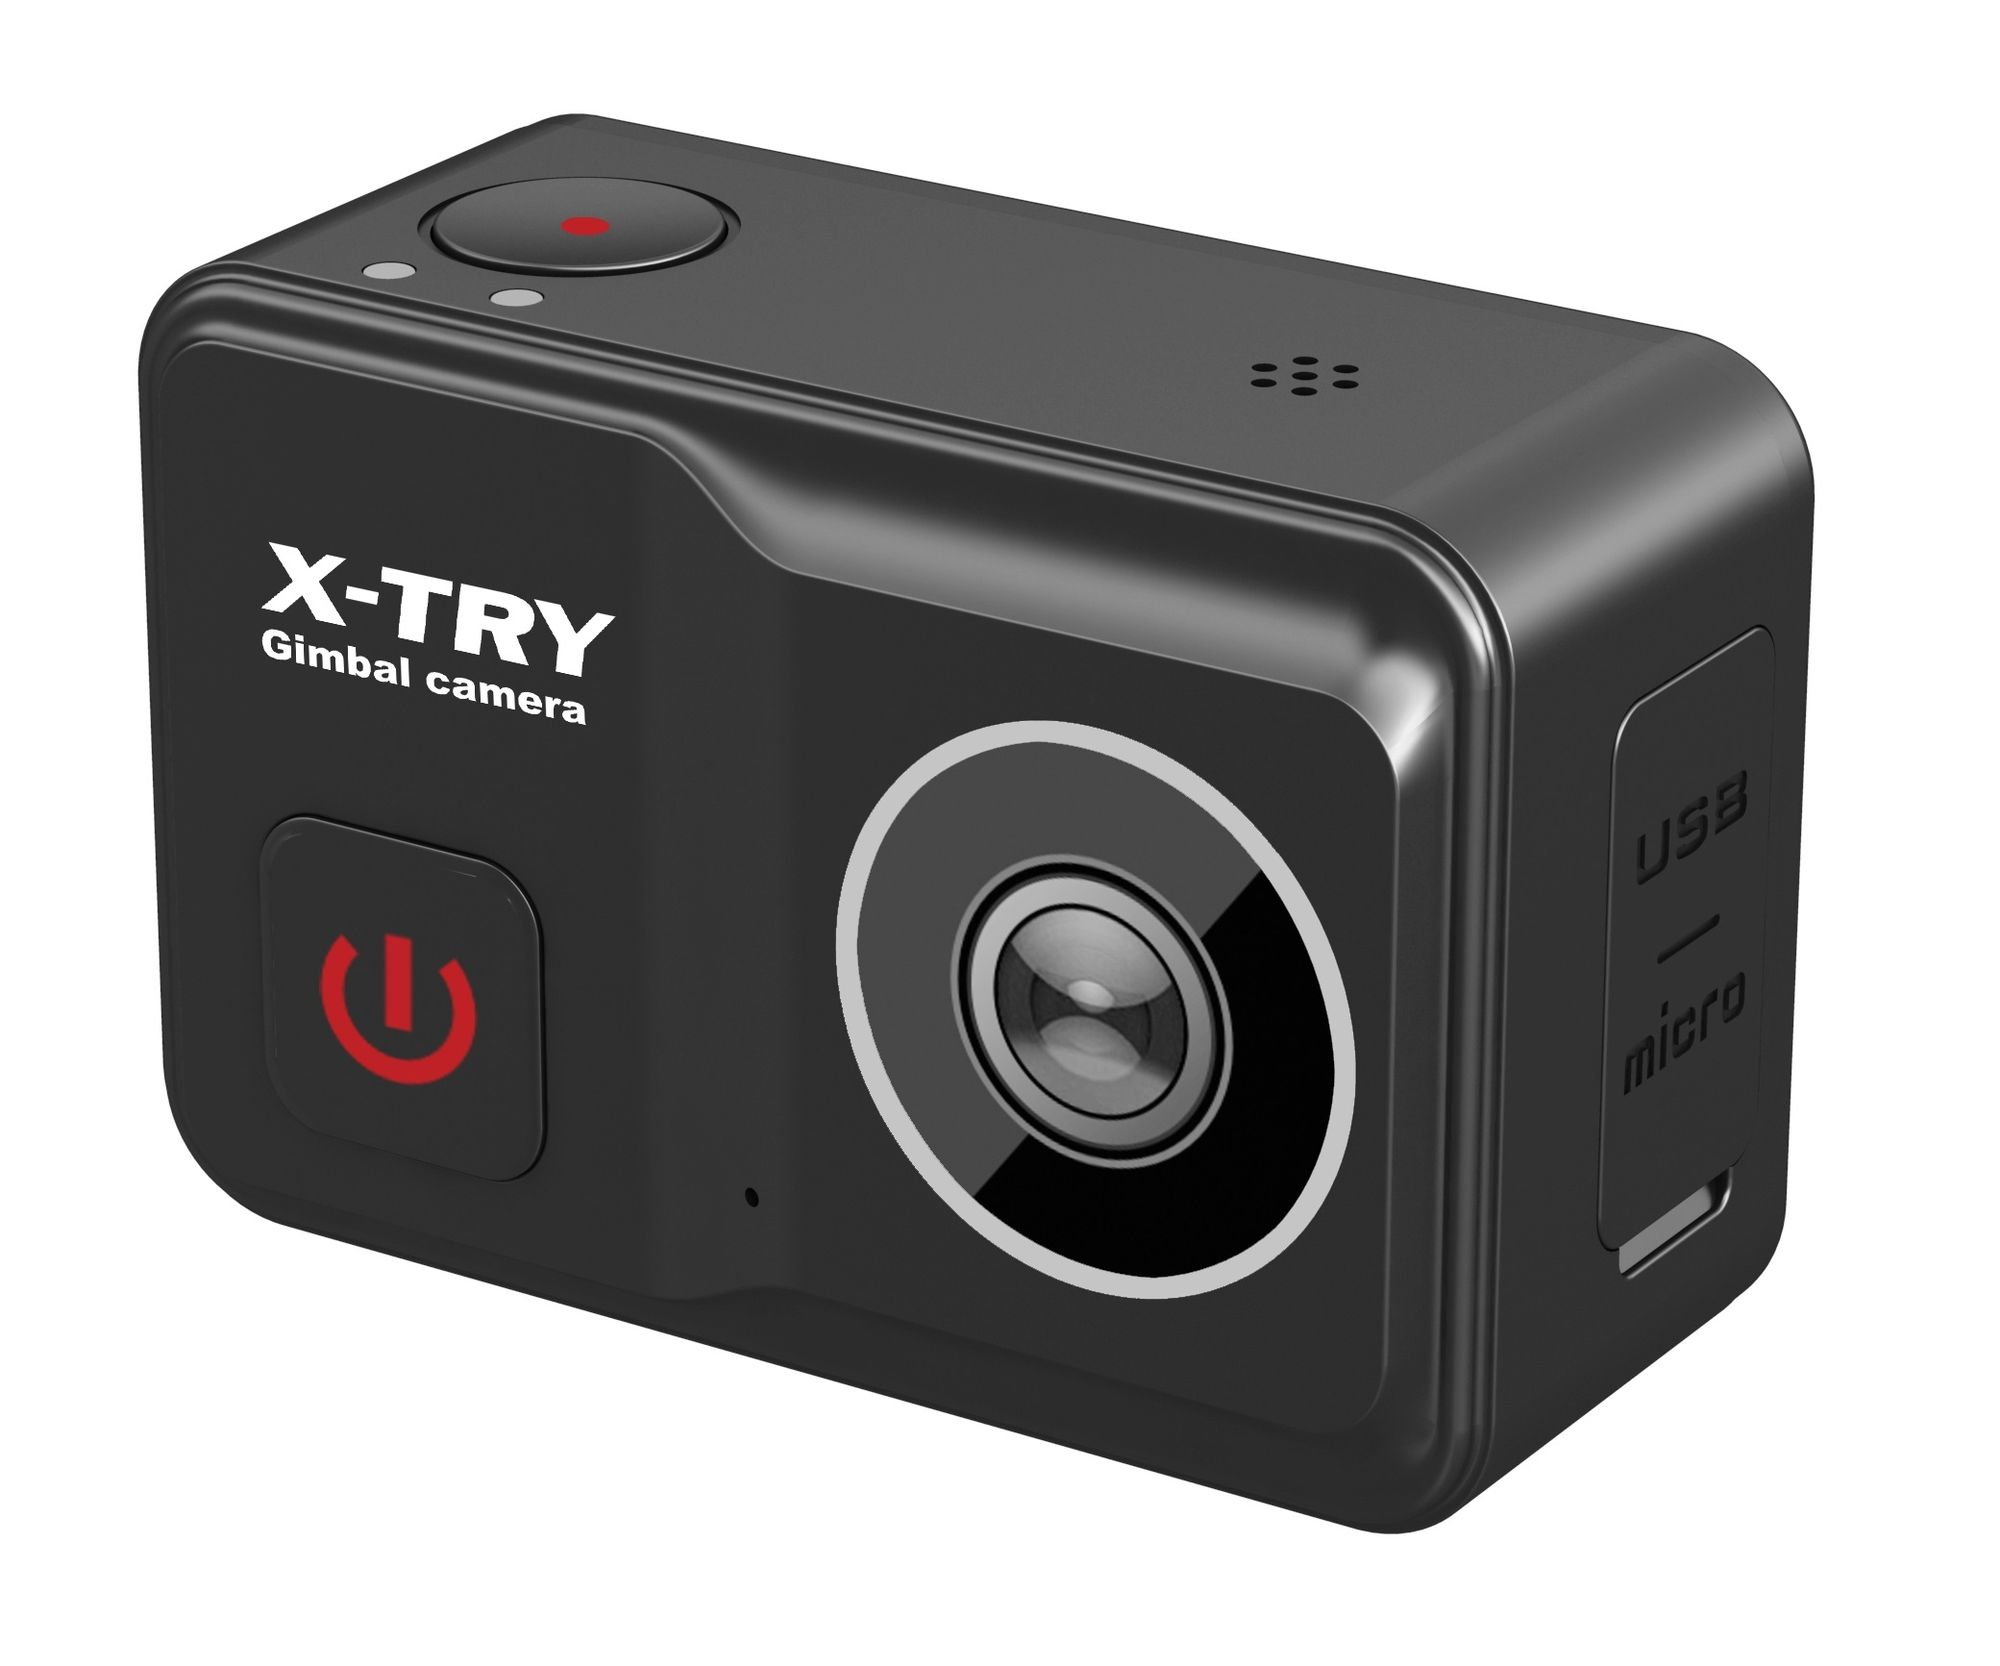 Экшн камера X-Try XTC502 Gimbal Real 4K/60FPS WDR Wi-Fi Power экшн камера x try xtc262 real 4k wi fi power